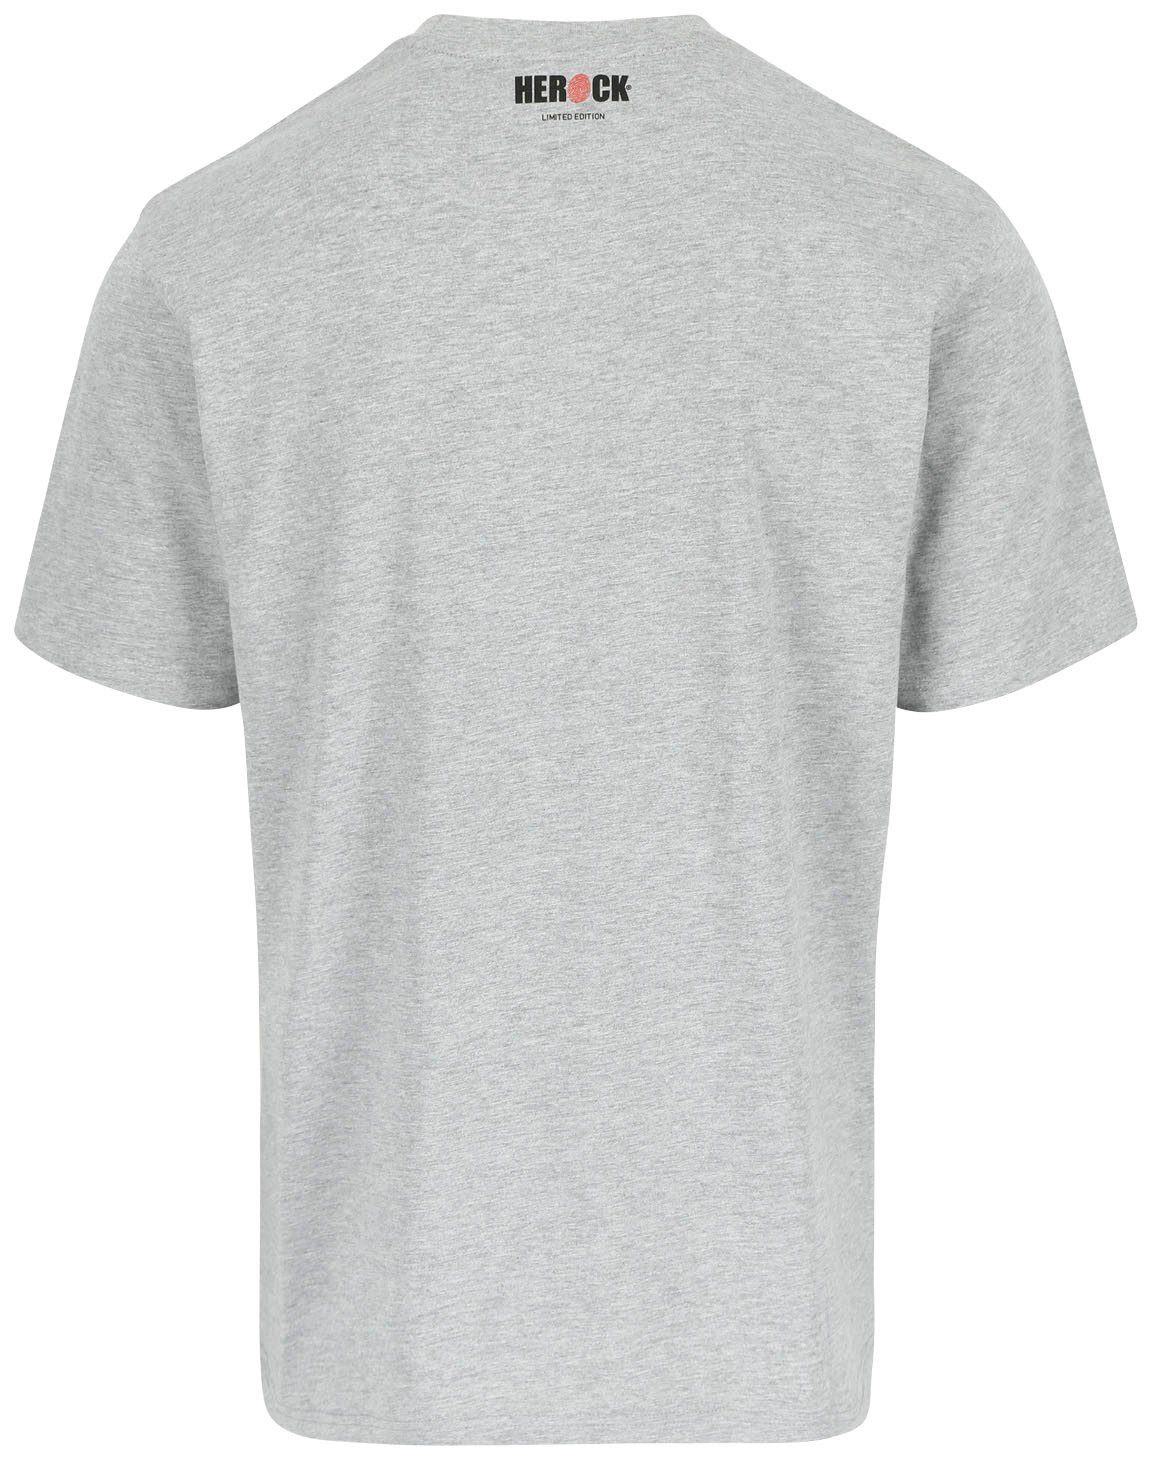 Farben Edition, hellgrau Herock verschiedene erhältlich Limited T-Shirt in Worker